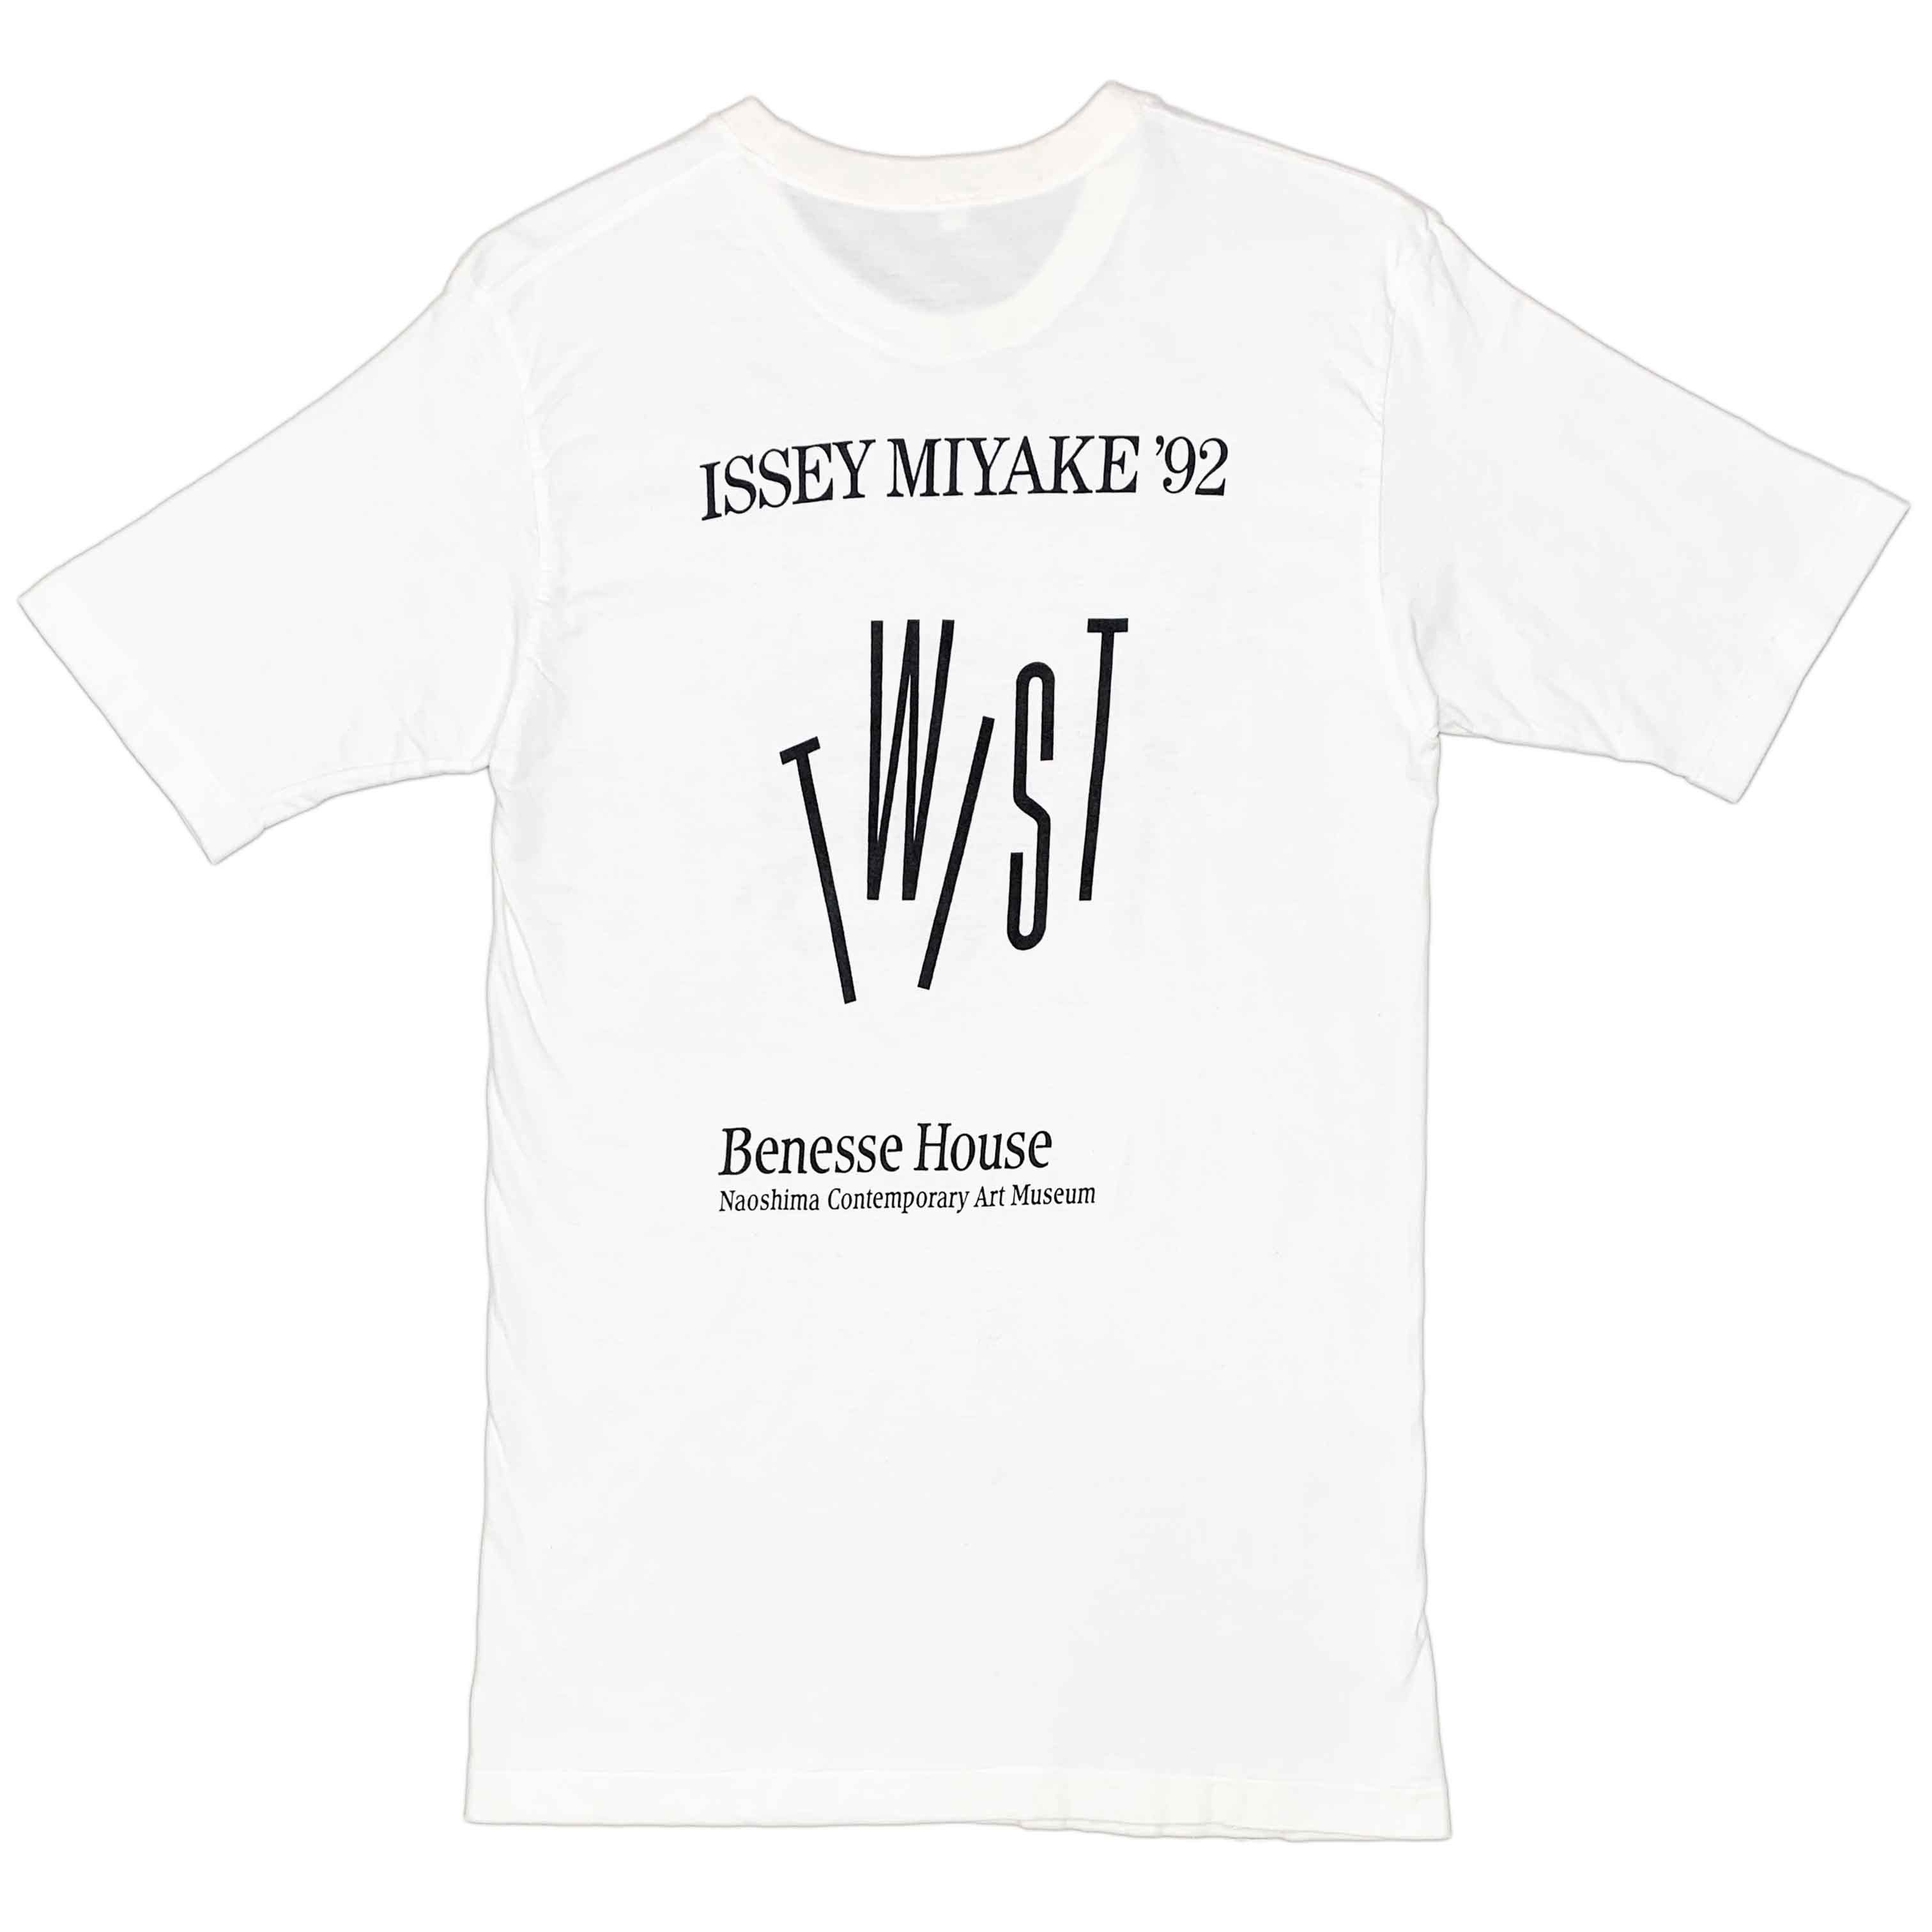 Issey Miyake - '92 'Twist' Exhibition Cotton T-Shirt - 2